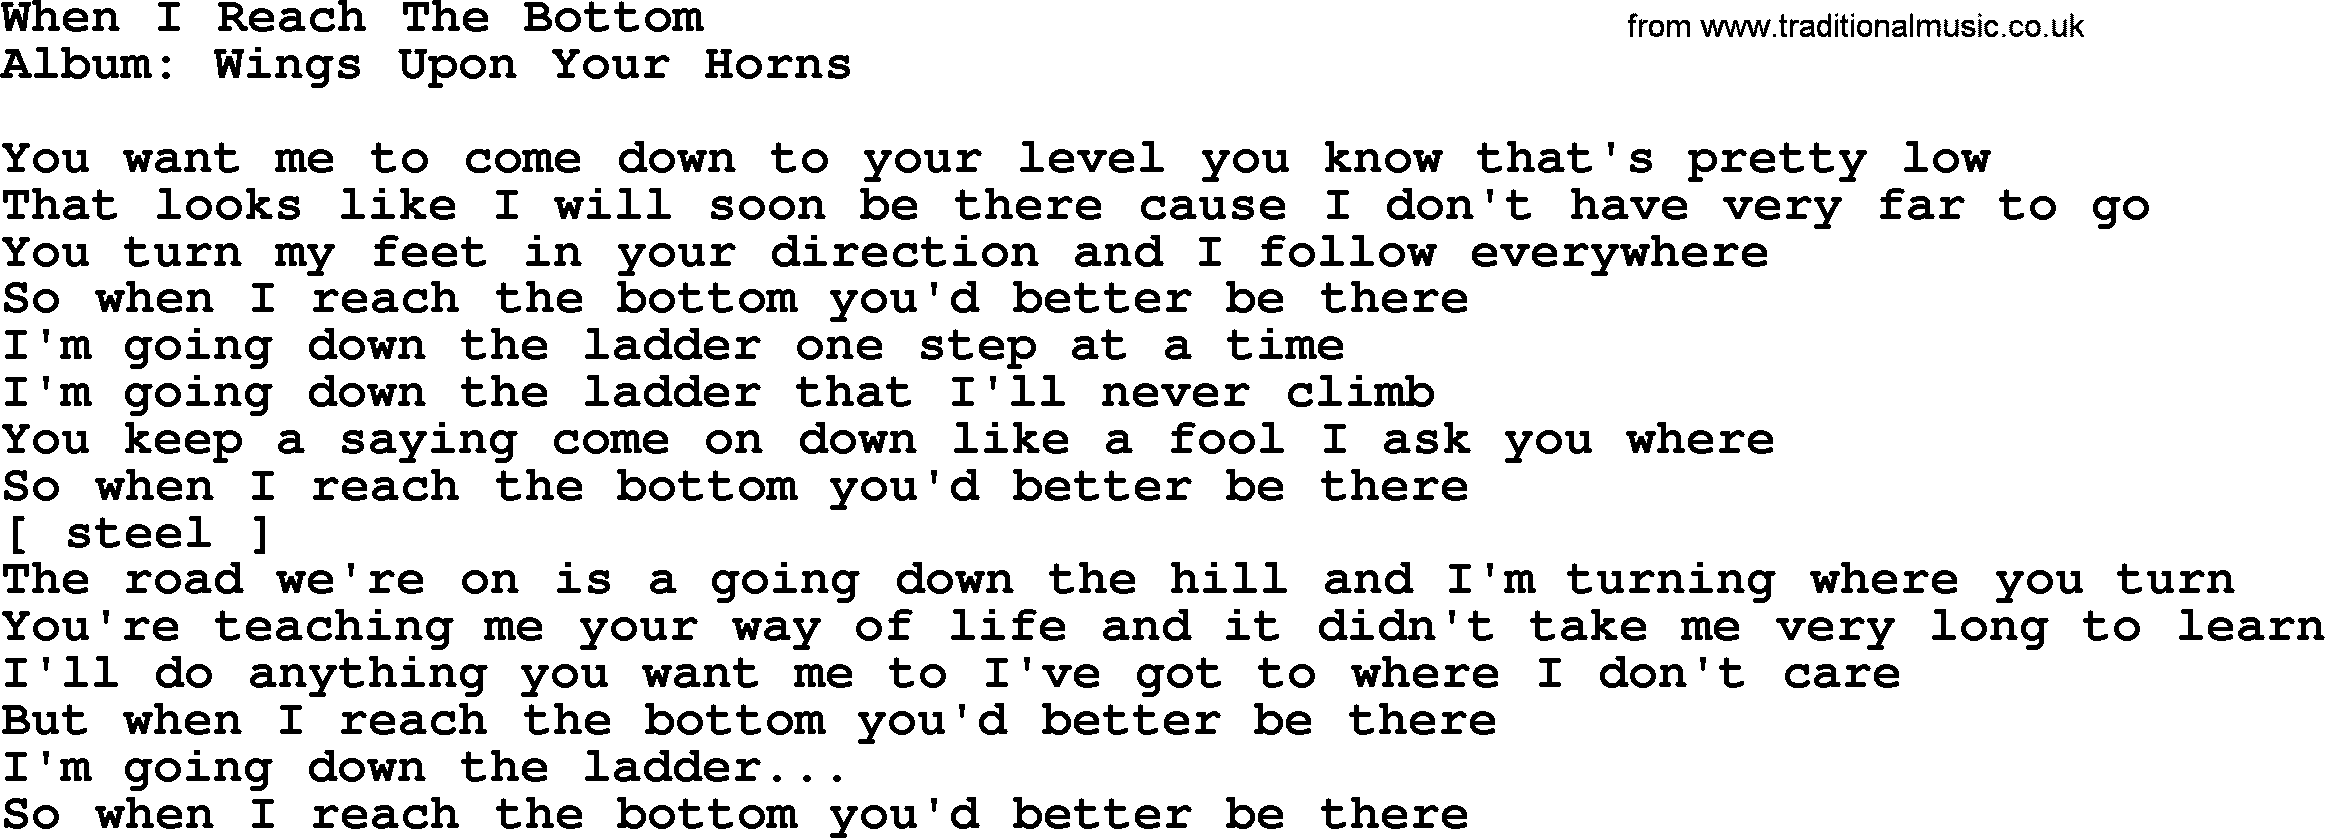 Loretta Lynn song: When I Reach The Bottom lyrics